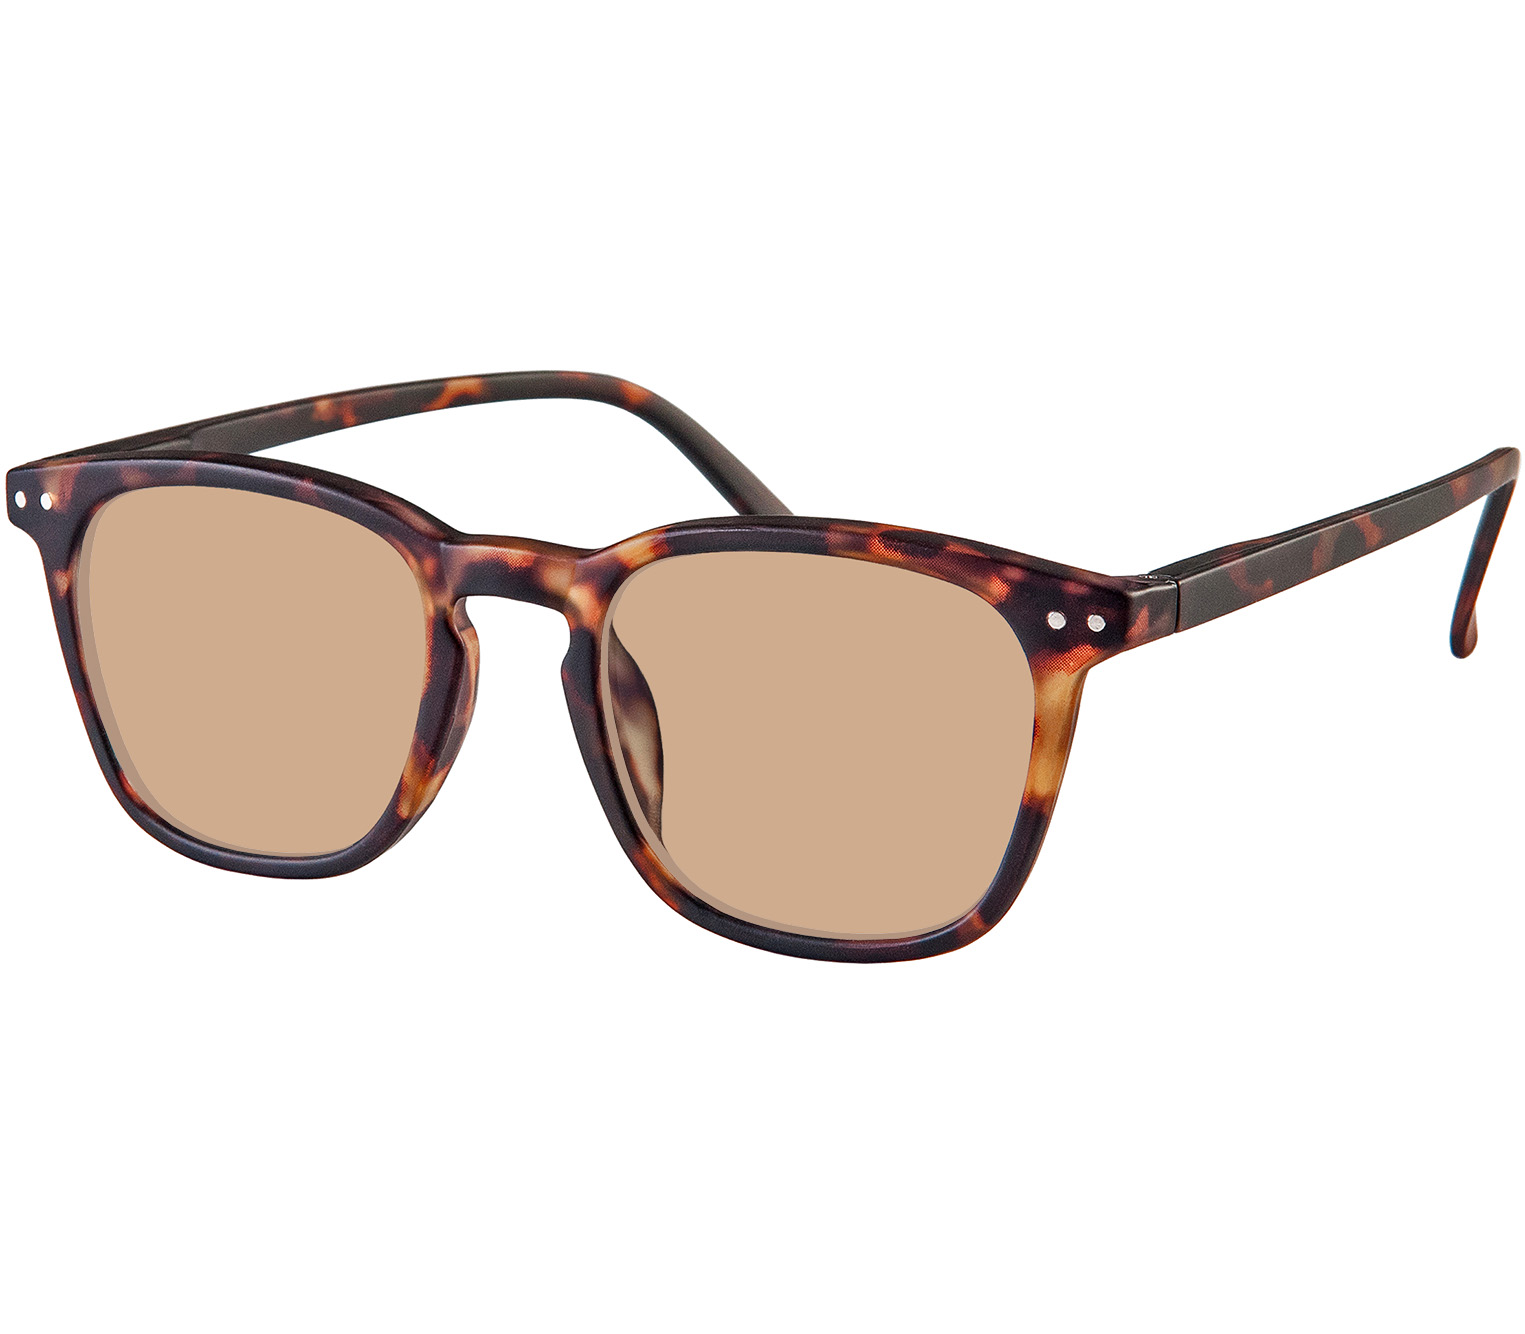 Main Image (Angle) - Torino (Tortoiseshell) Sunglasses